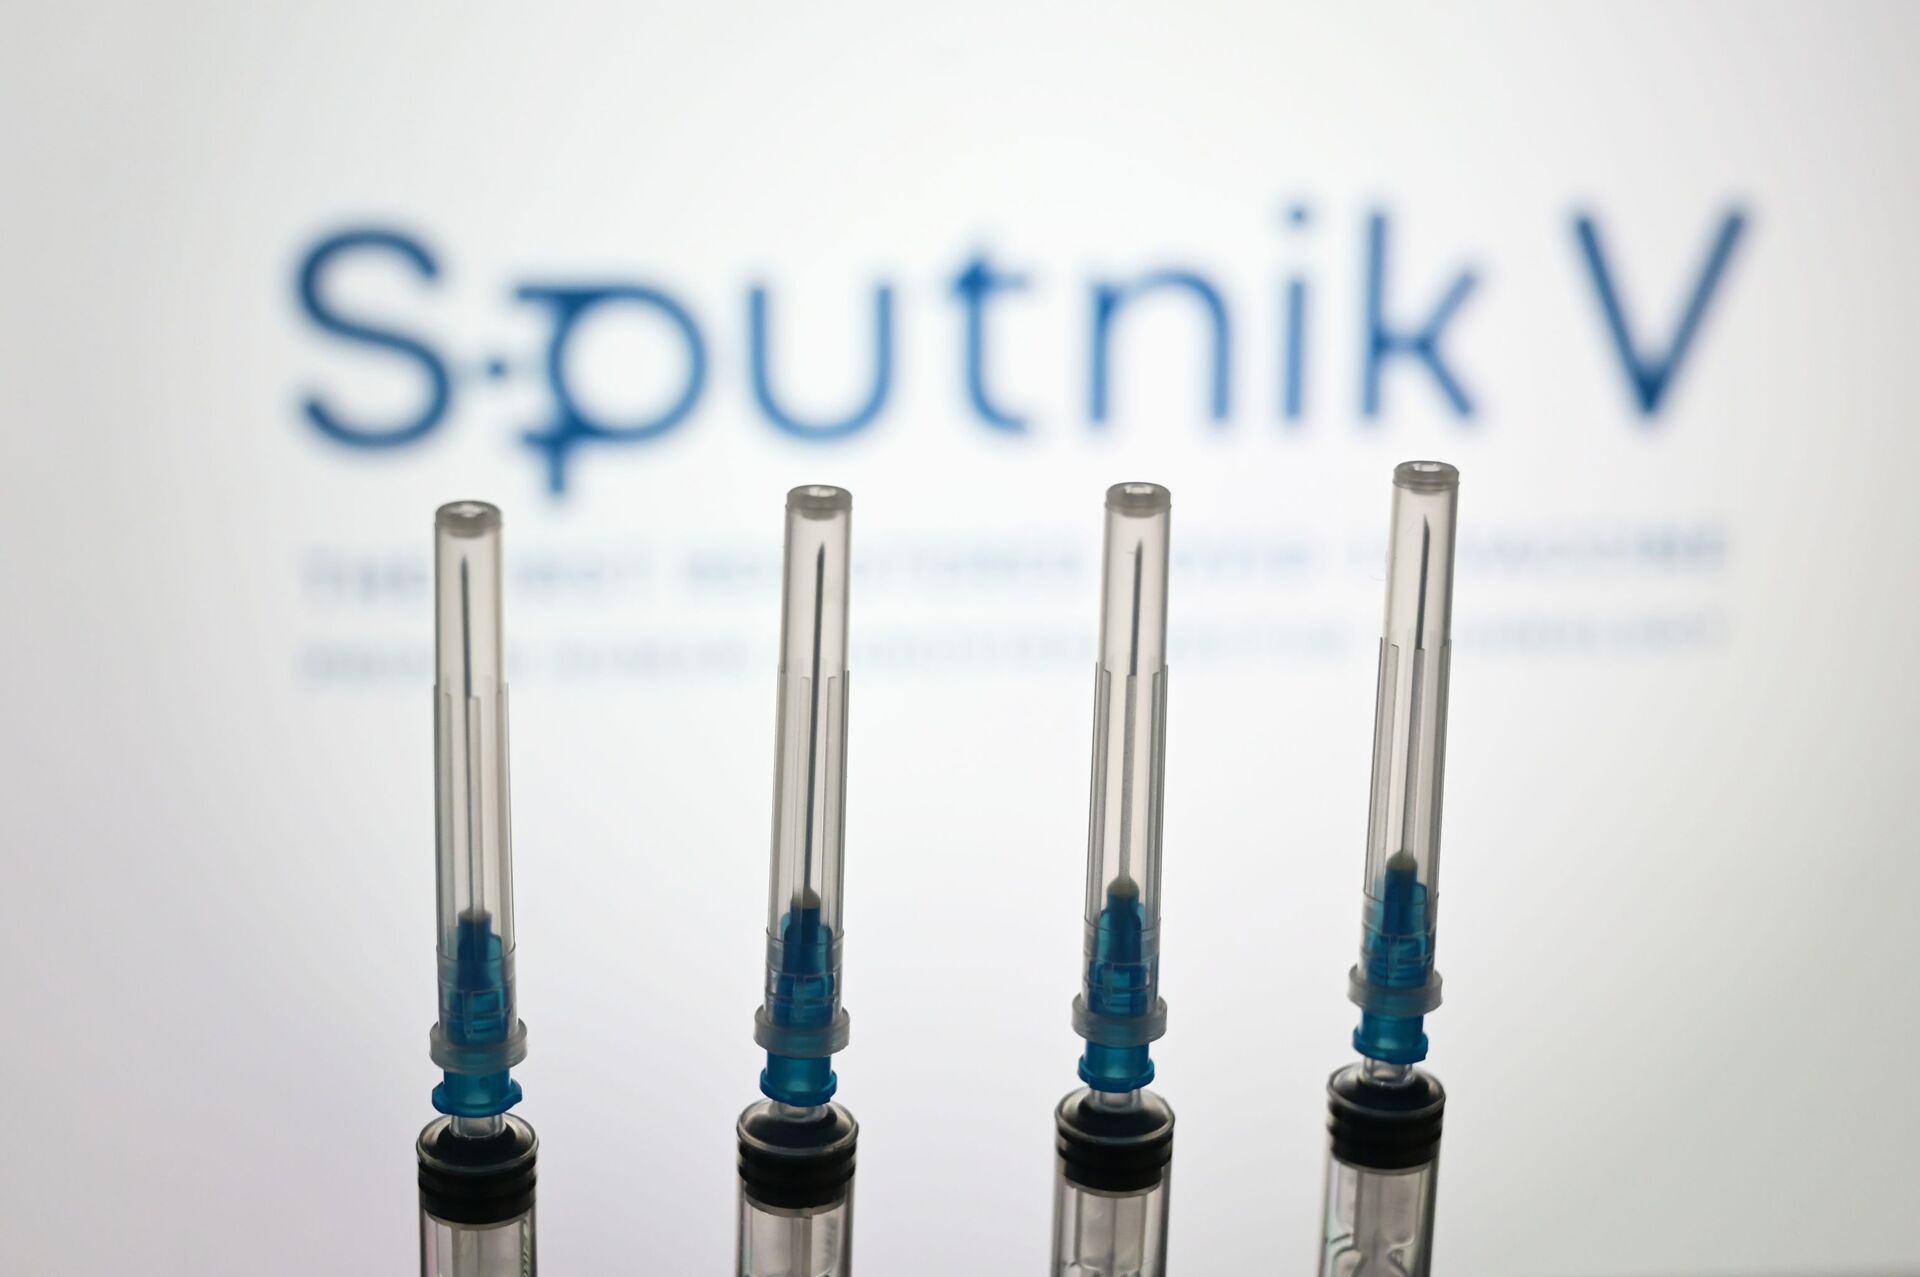 Iraque aprova Sputnik V e fecha compra de 1 milhão de doses da vacina, diz mídia - Sputnik Brasil, 1920, 04.03.2021